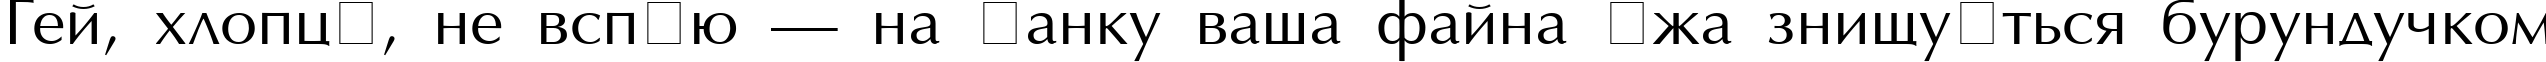 Пример написания шрифтом AGOptimaCyr Roman текста на украинском